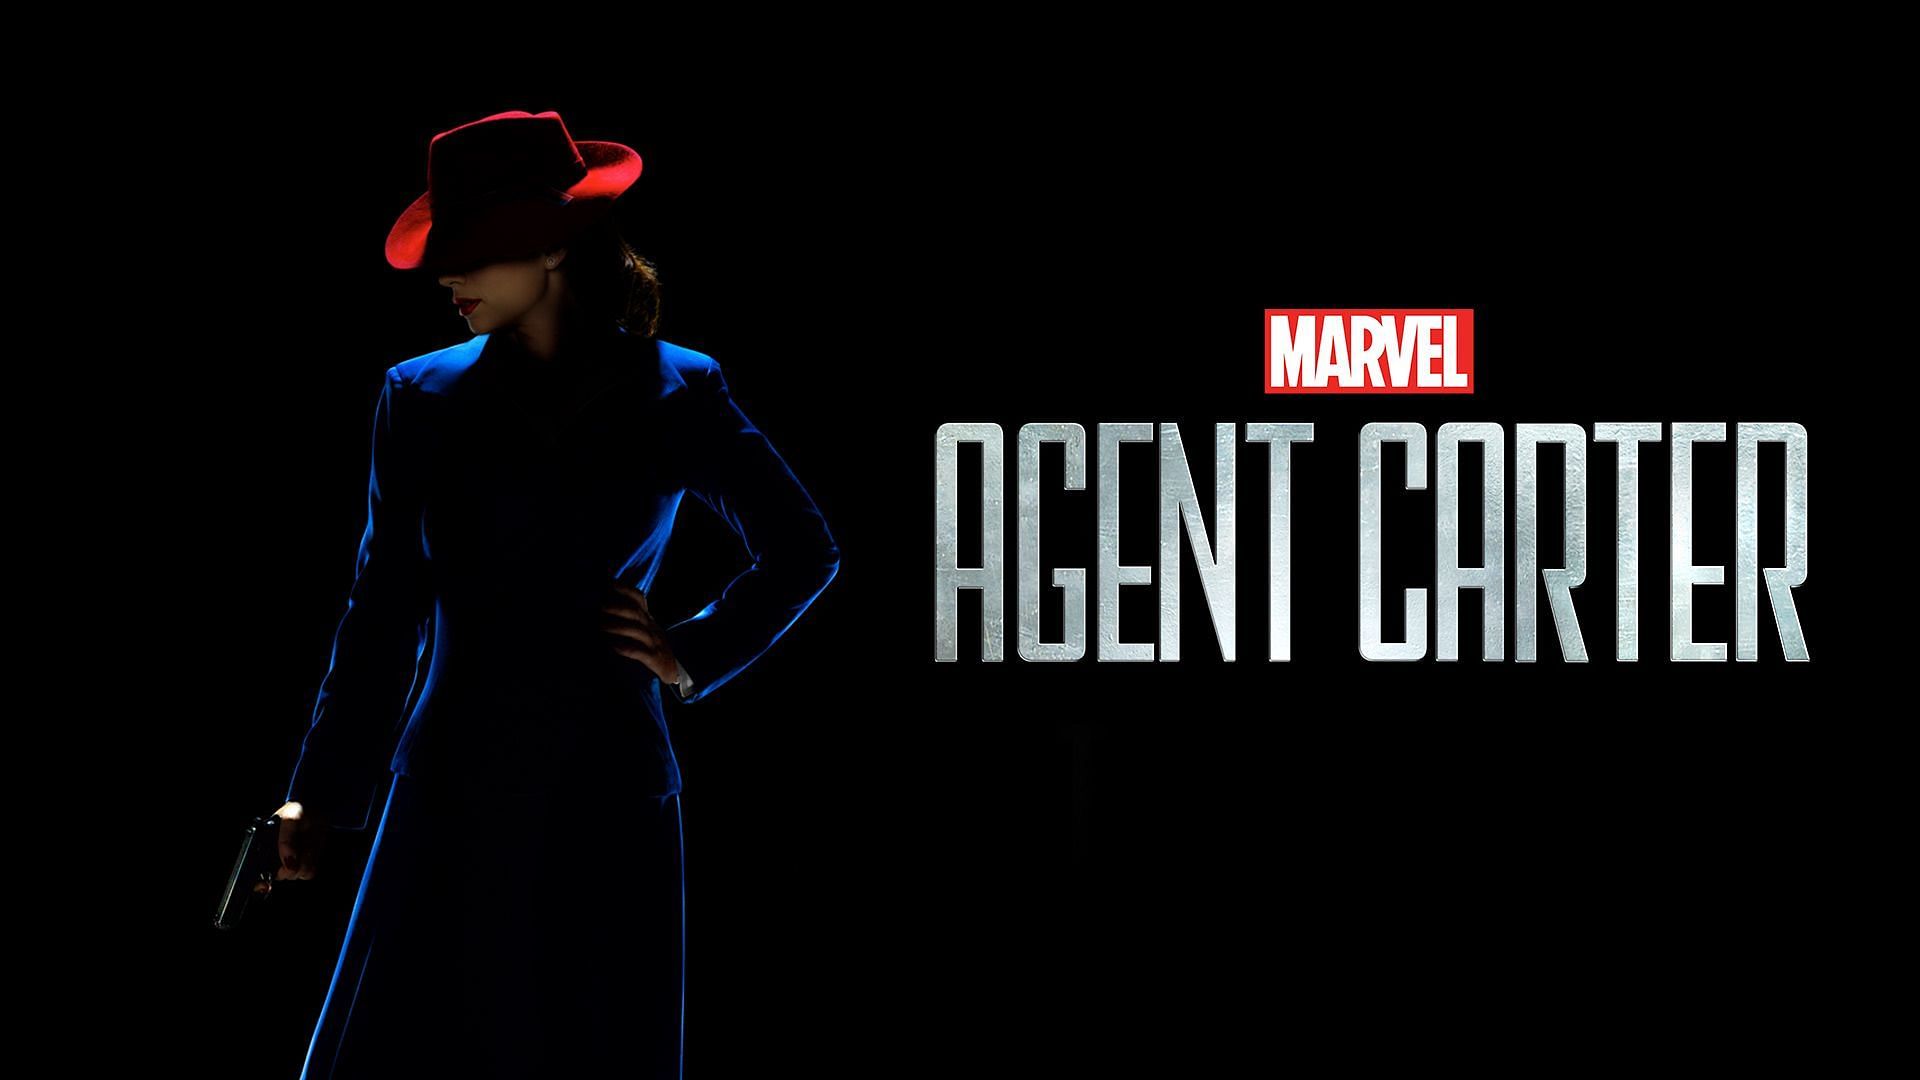 Agent Carter (Image via Marvel.com)